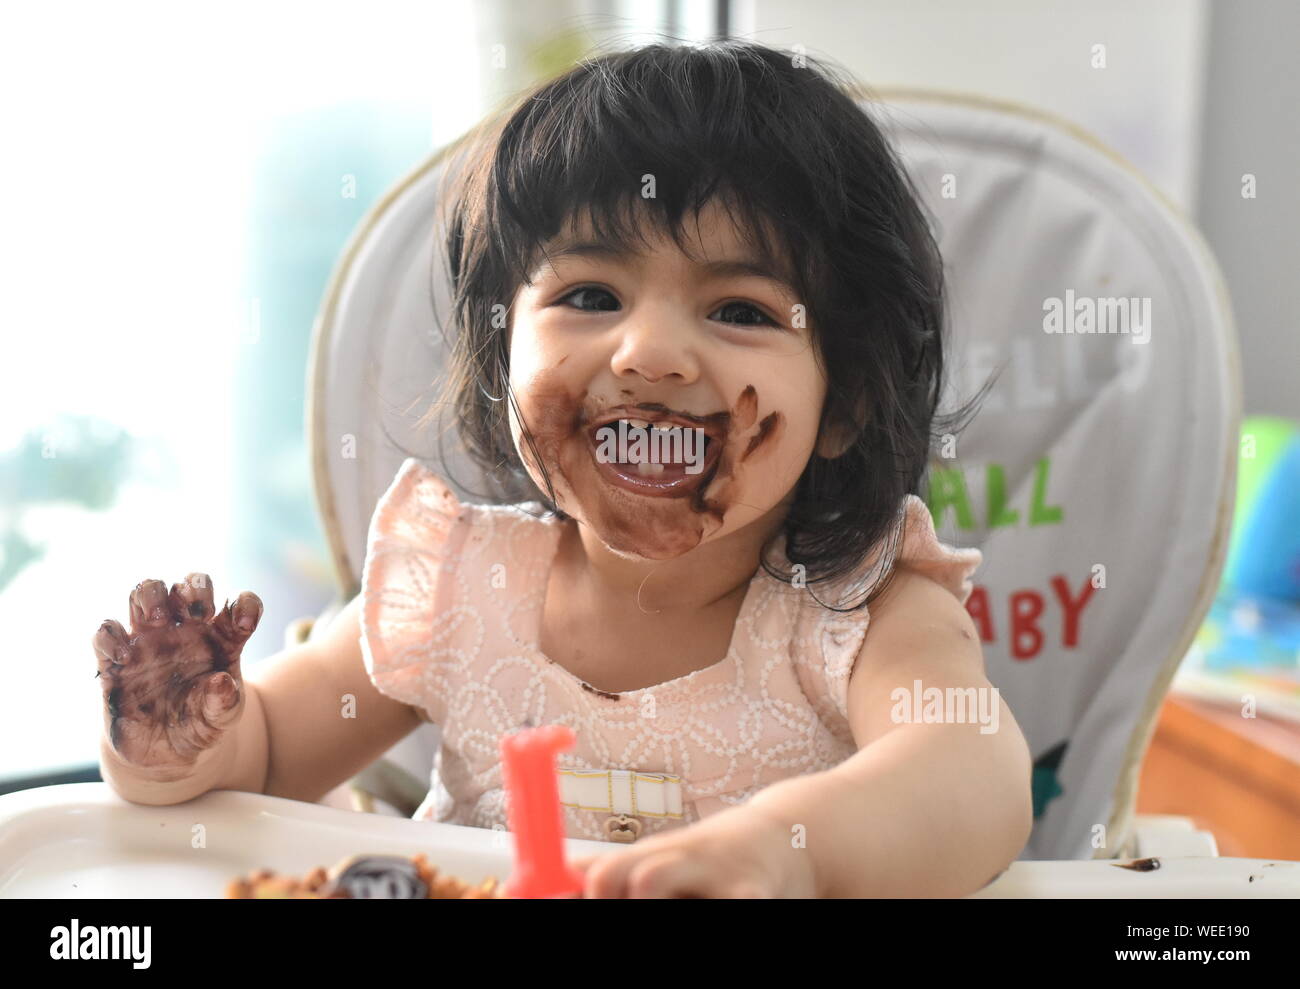 Lindo bebé niña feliz desordenado comer tarta de chocolate de cumpleaños Foto de stock